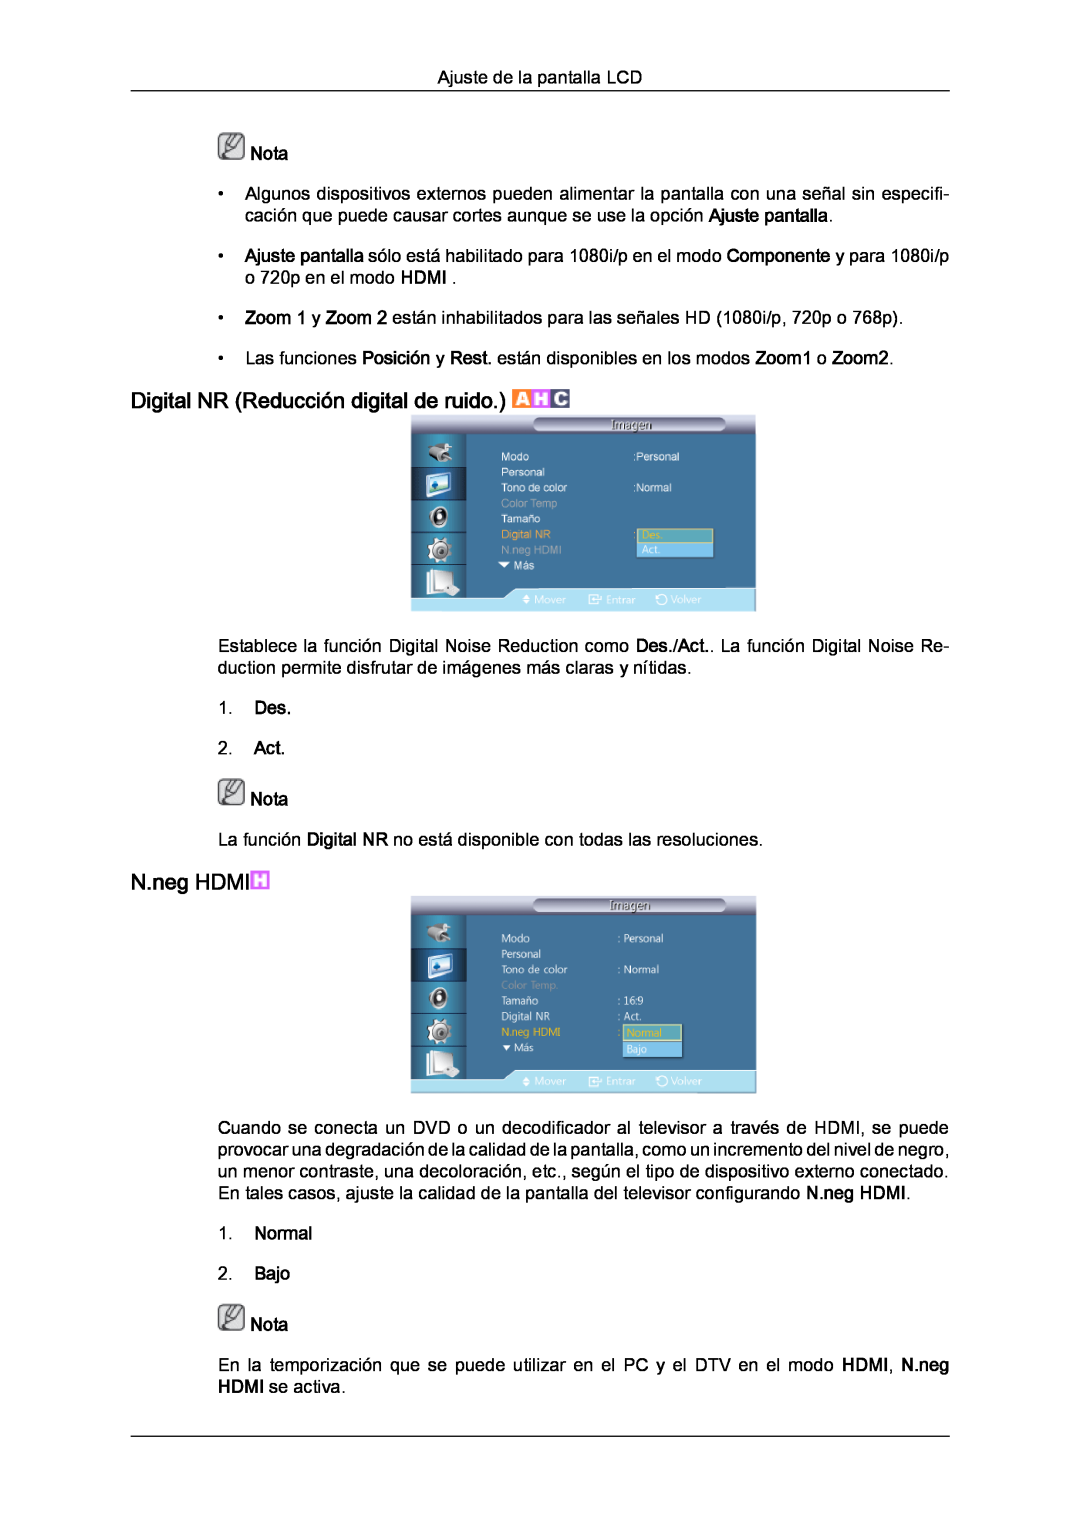 Samsung LH46CRPMBD/EN manual Digital NR Reducción digital de ruido, N.neg HDMI, Normal 2. Bajo Nota, Des 2. Act Nota 